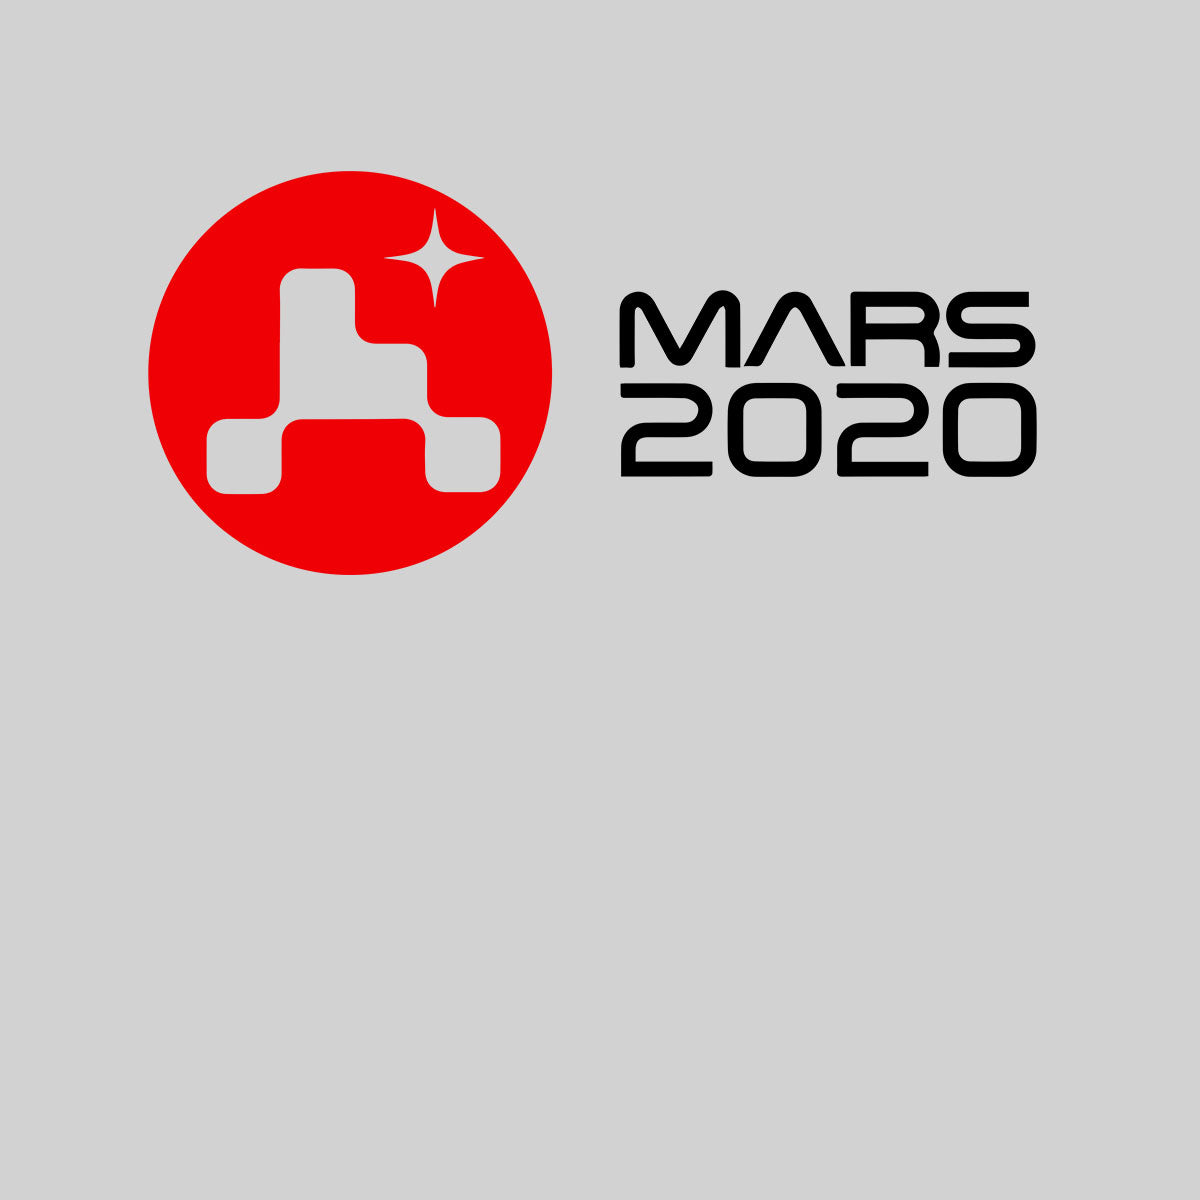 Mars Landing 2021 T-Shirt Space Nasa perseverance Tee Red Planet Baby & Toddler Body Suit - Kuzi Tees